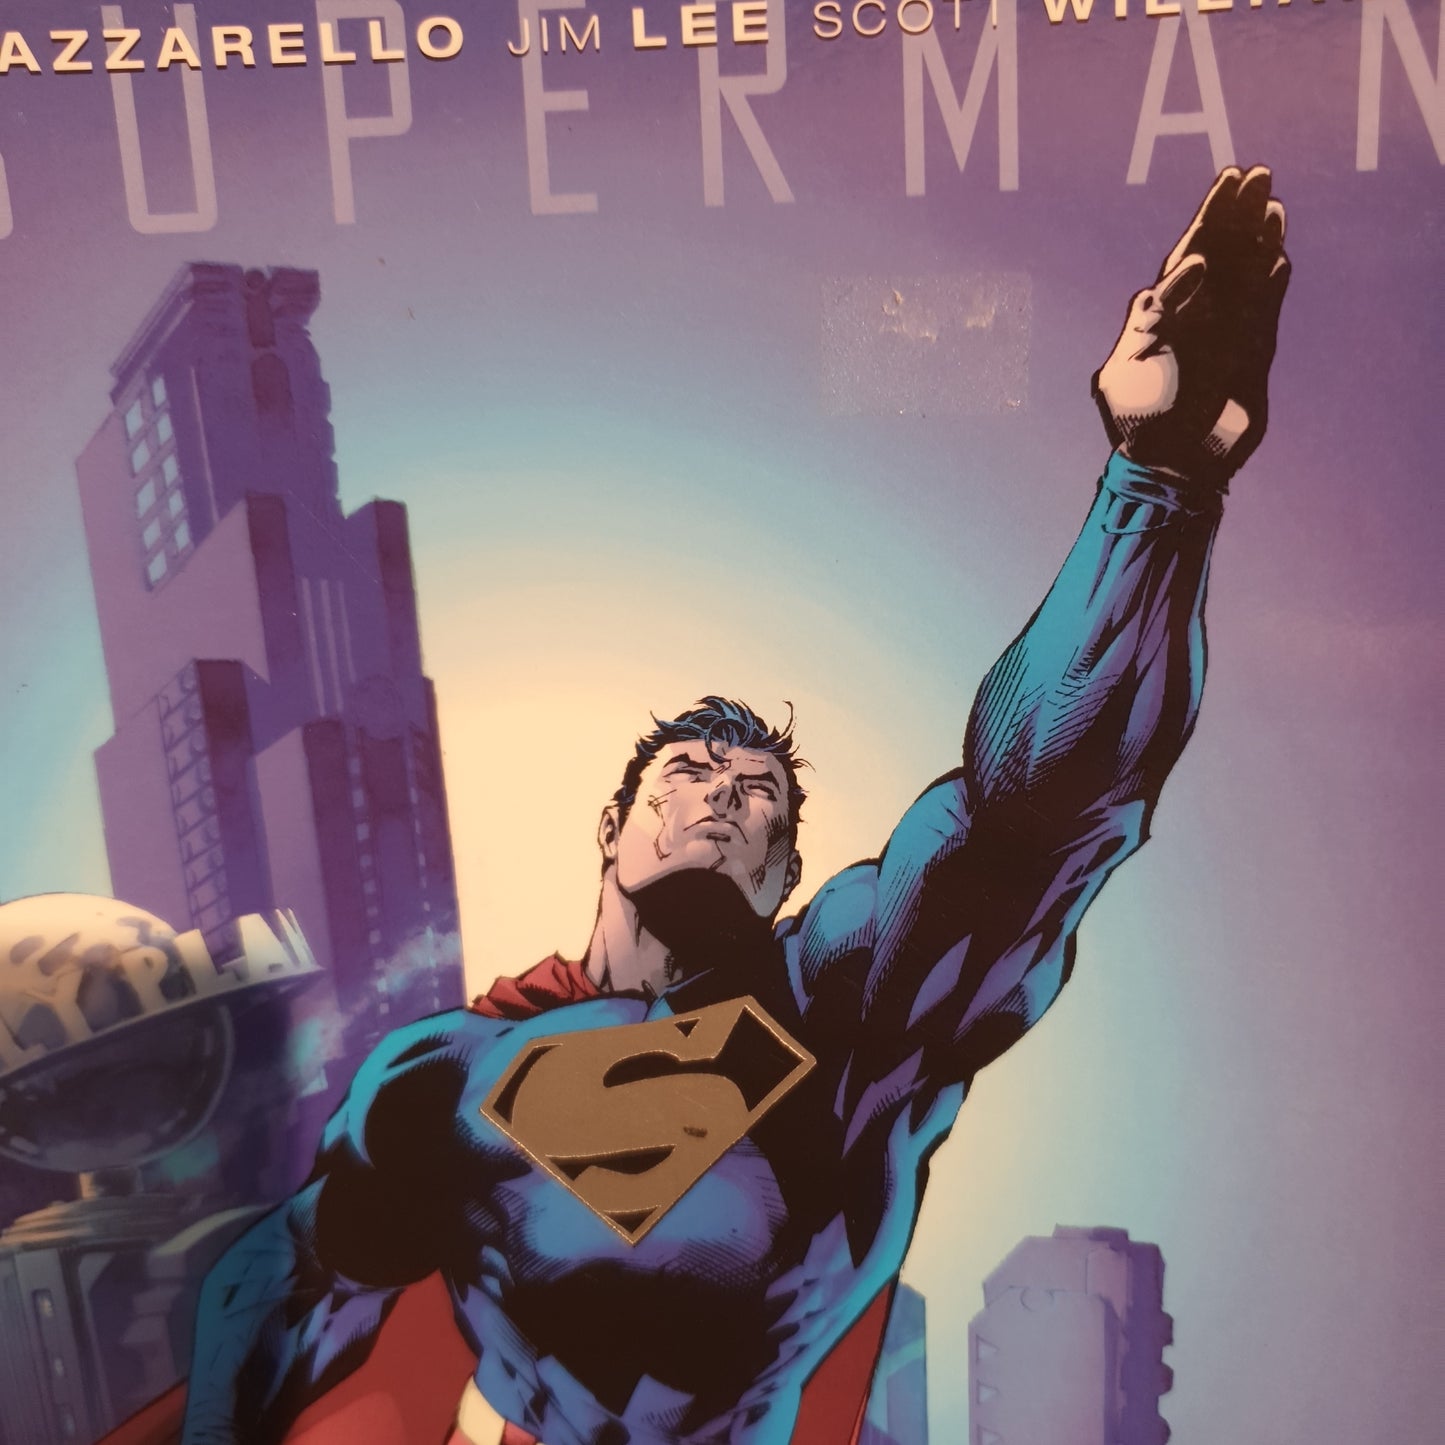 Superman For Tomorrow Vol 2 by Azzarello, Lee & Williams (2005)